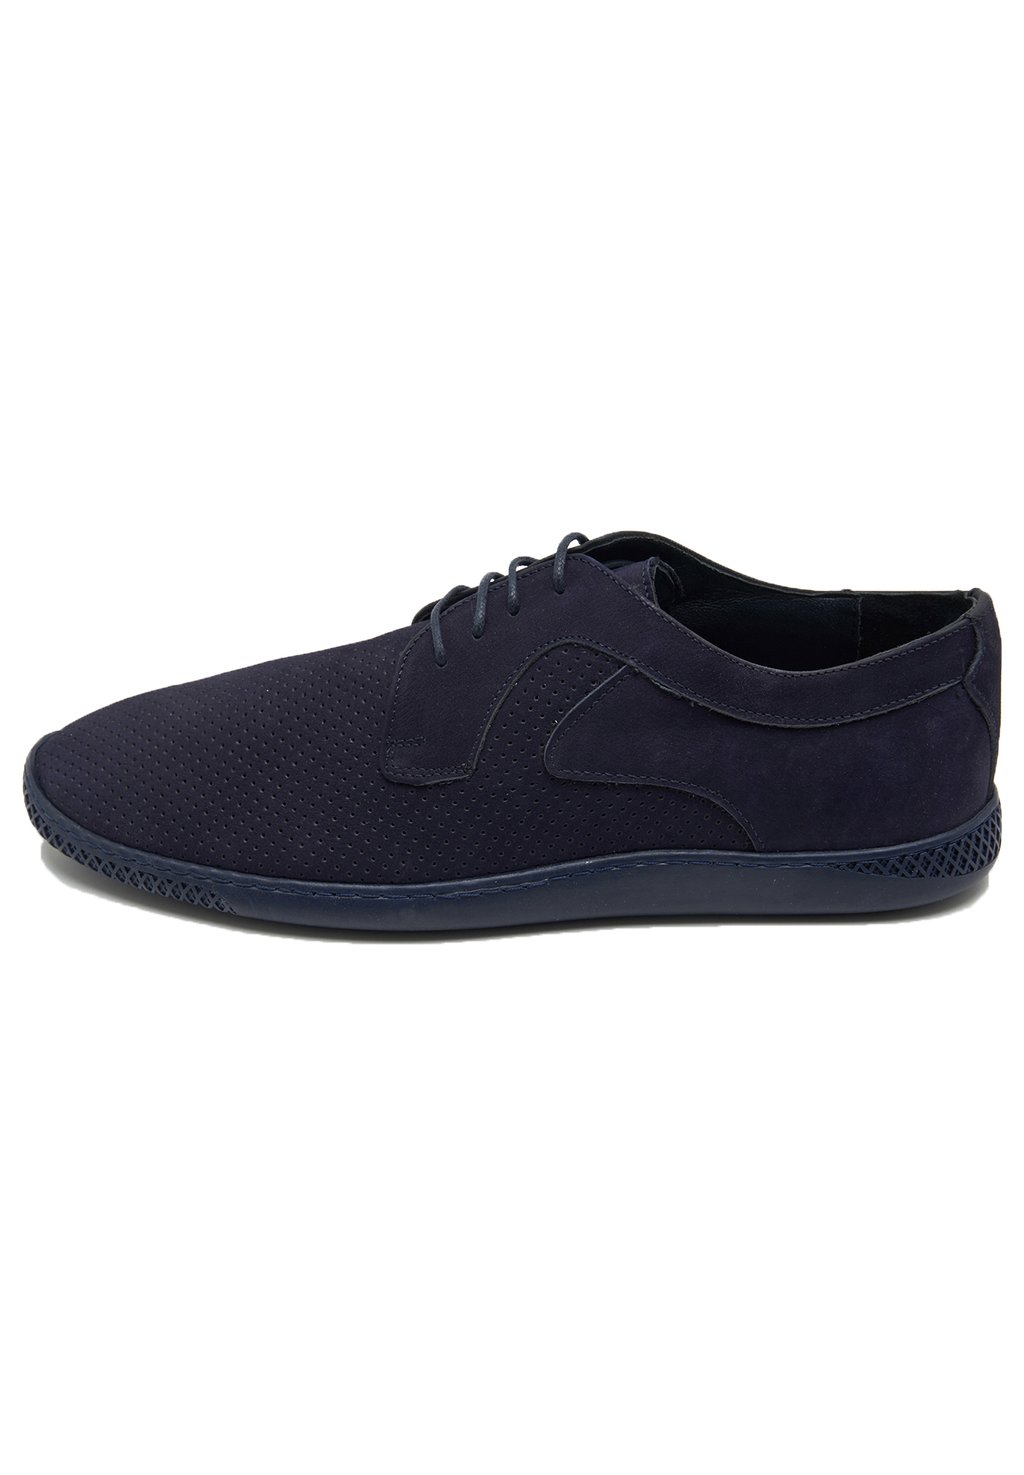 Спортивные туфли на шнуровке DESA, цвет navy спортивные туфли на шнуровке desa цвет dark blue